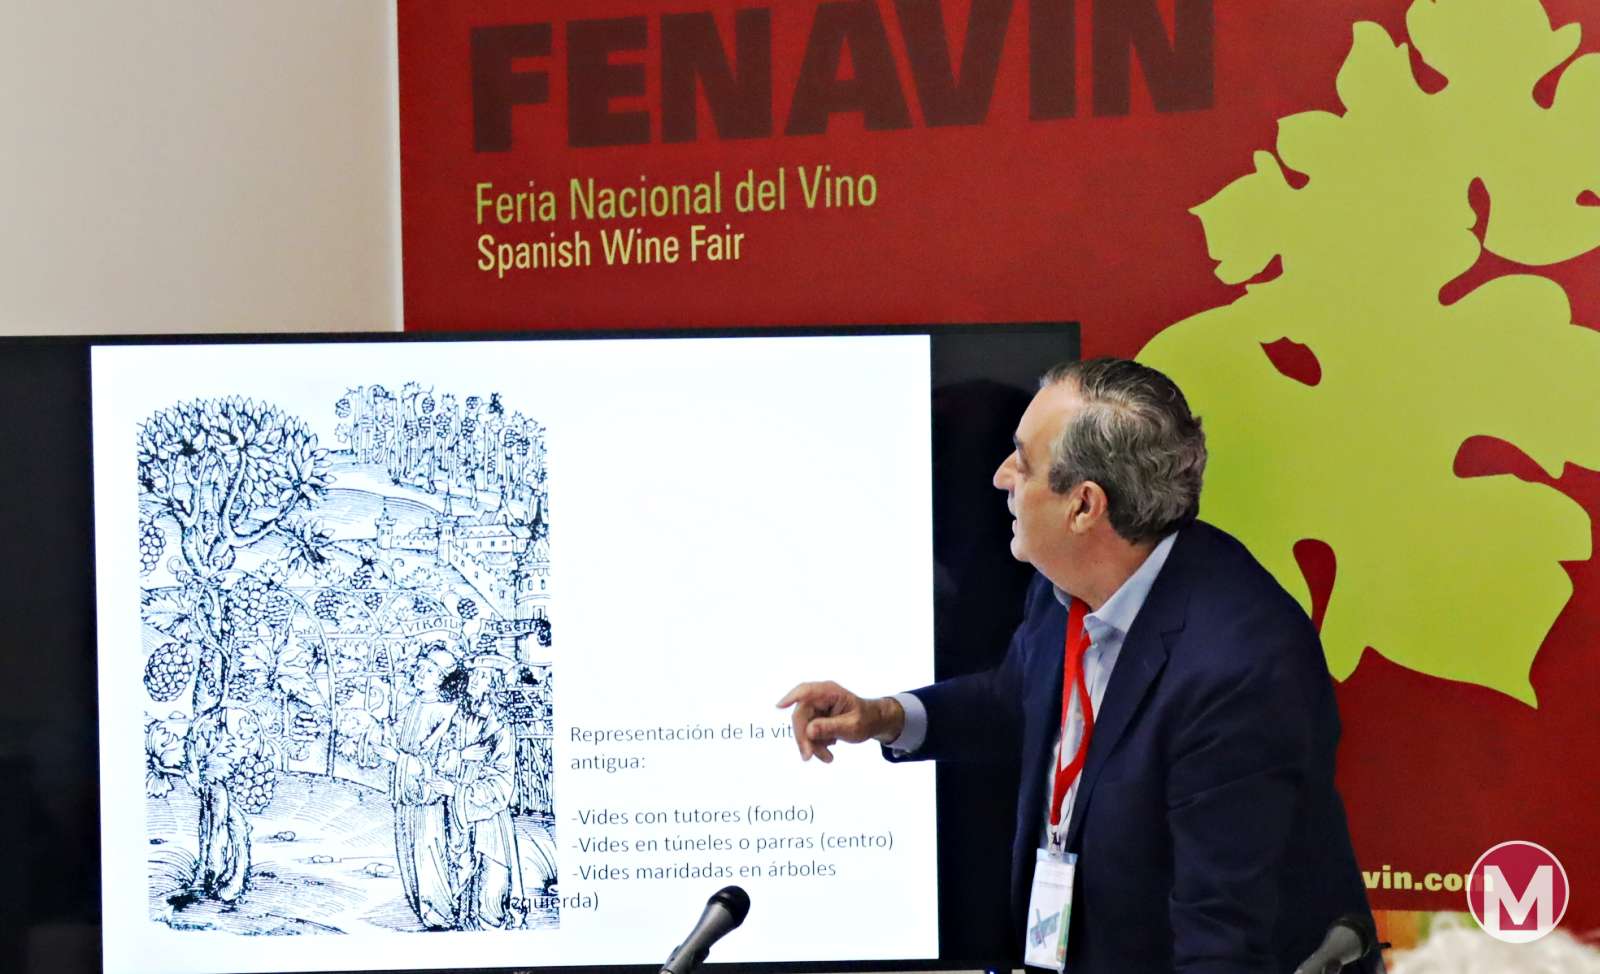 José Hidalgo ofrece una interesante charla sobre viticultura Biodiversa y regenerativa en FENAVIN